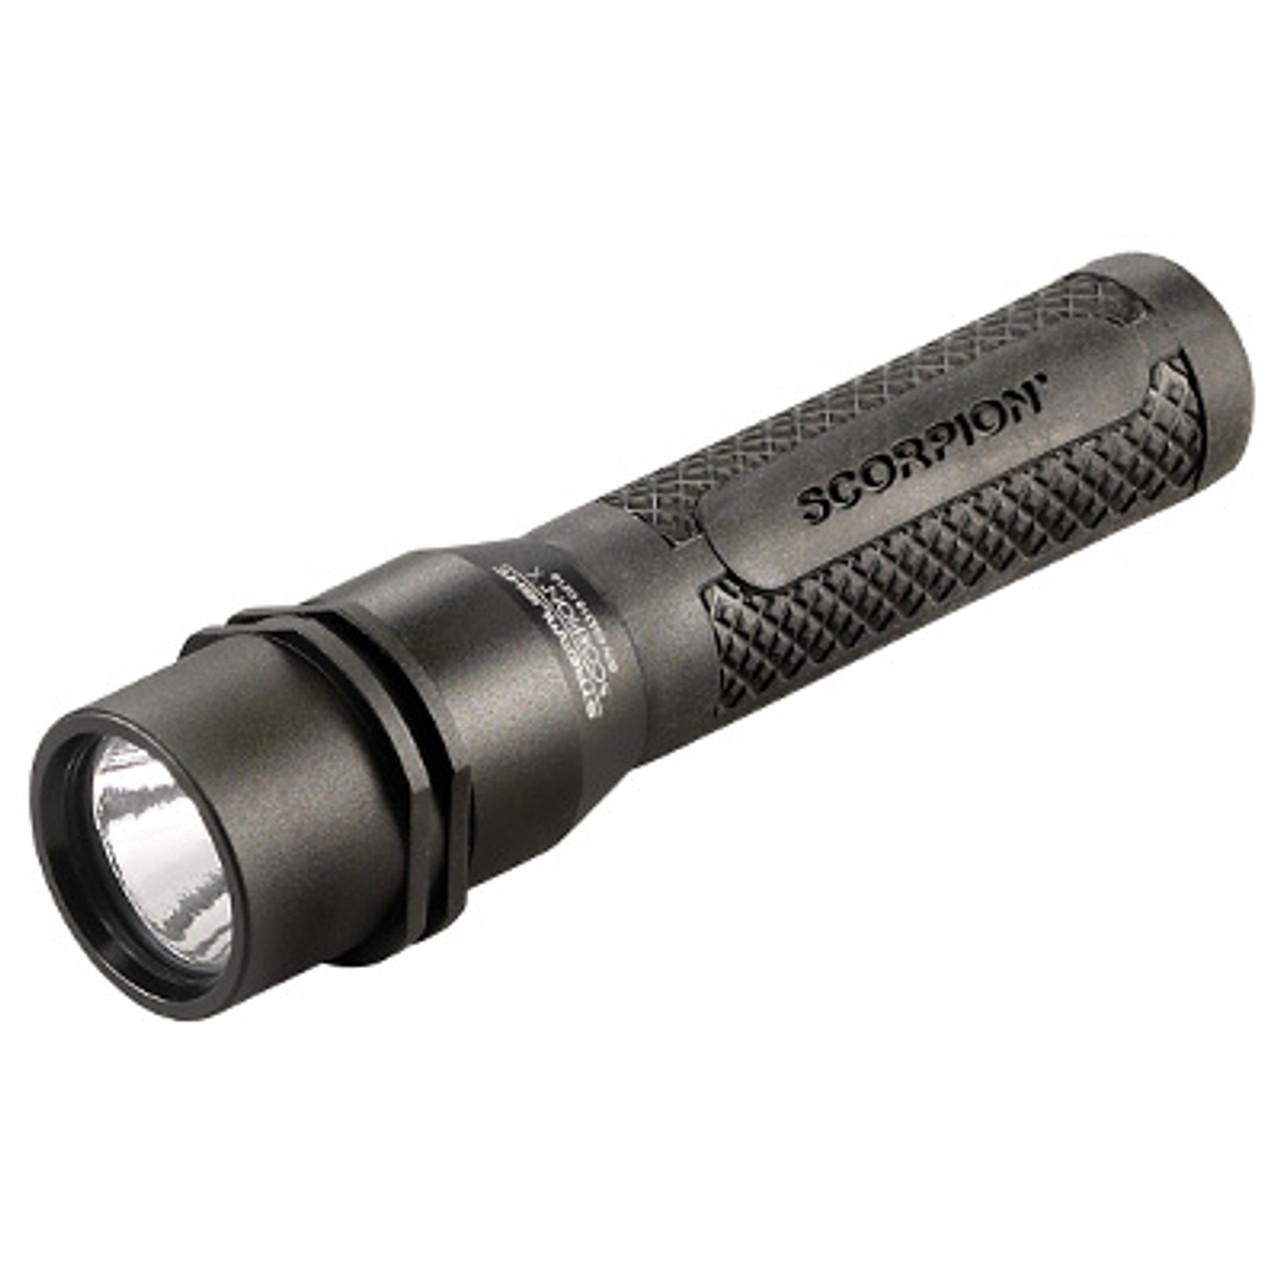 Streamlight-CR123A-85179-Lithium-3v-Battery-12-Pack